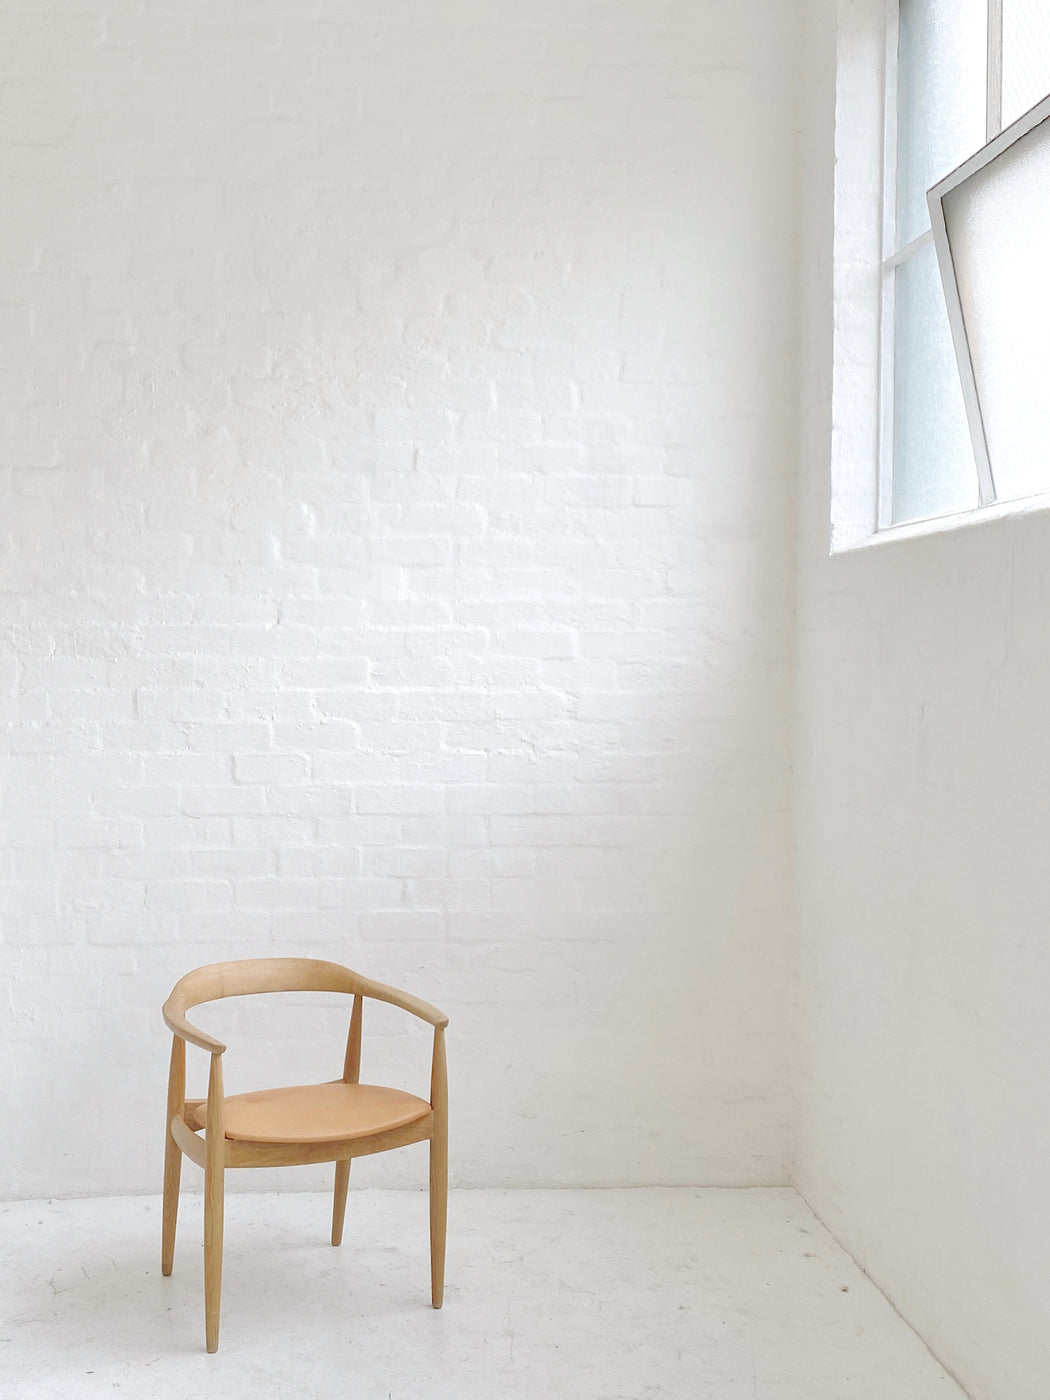 Illum Wikkelso 'Round' Chair